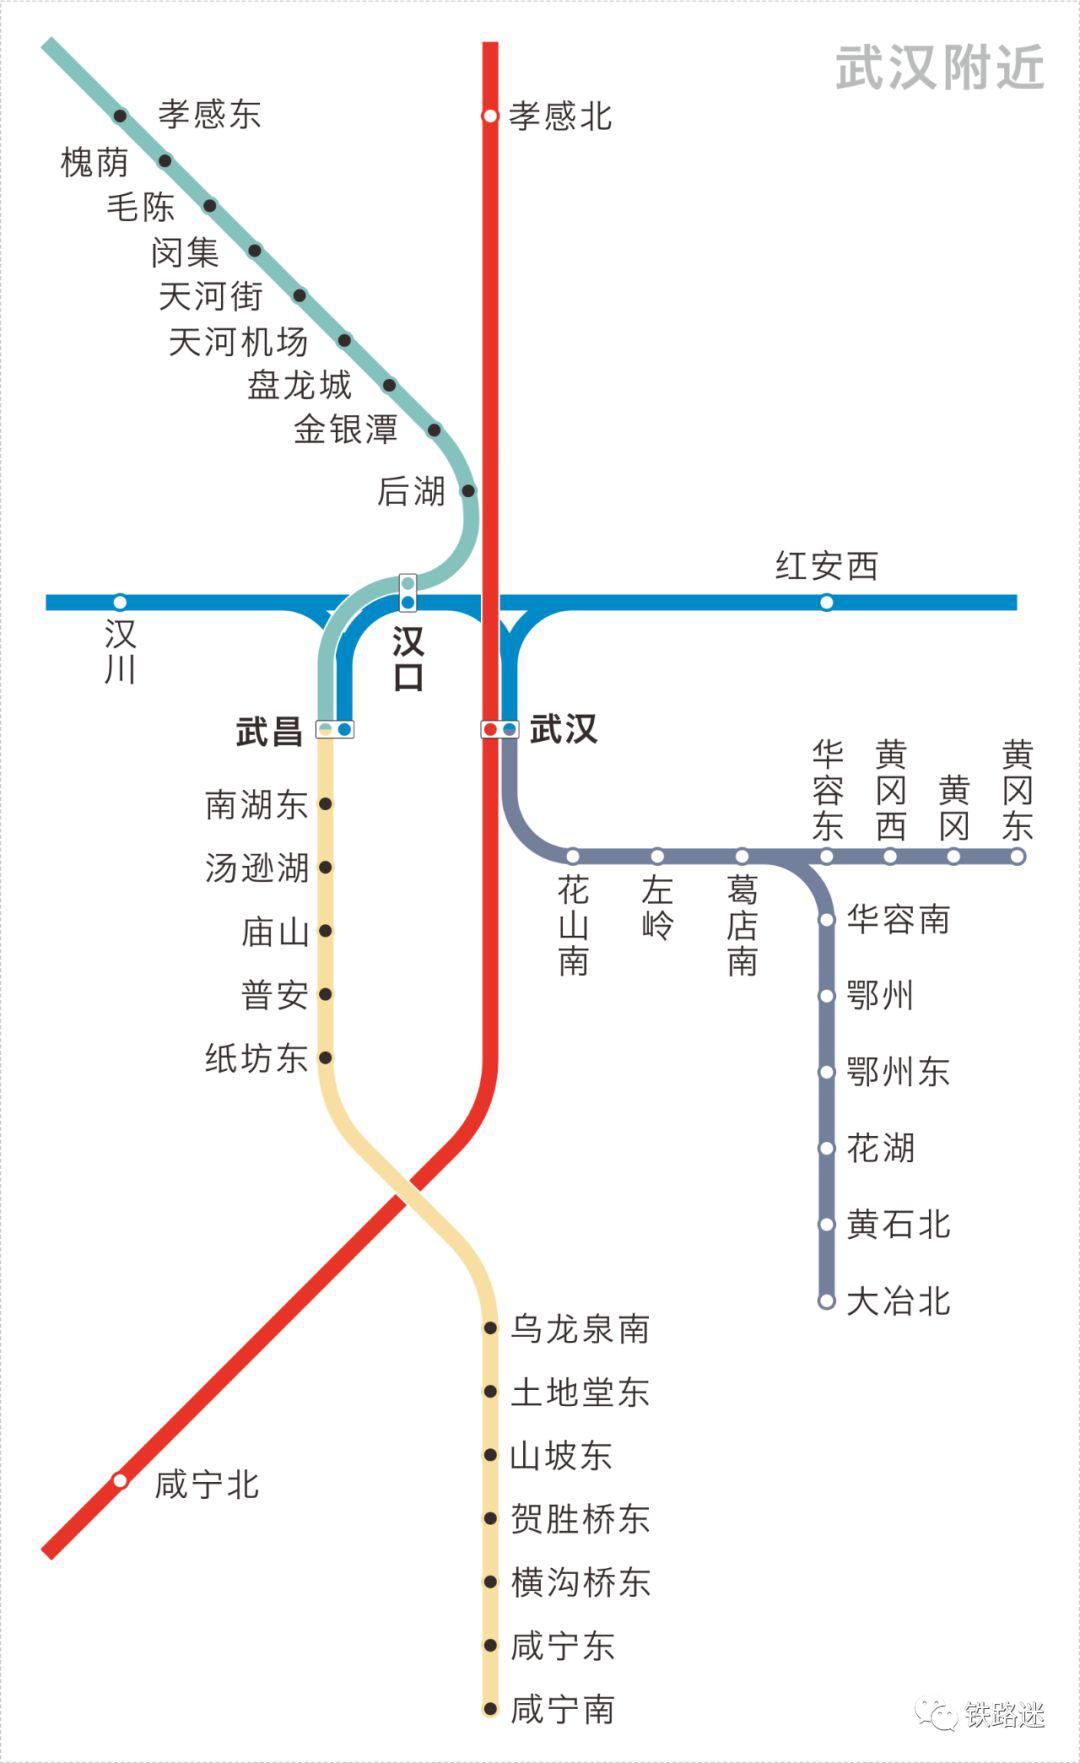 走遍神州大地请收好这份中国高铁地图2020最新版